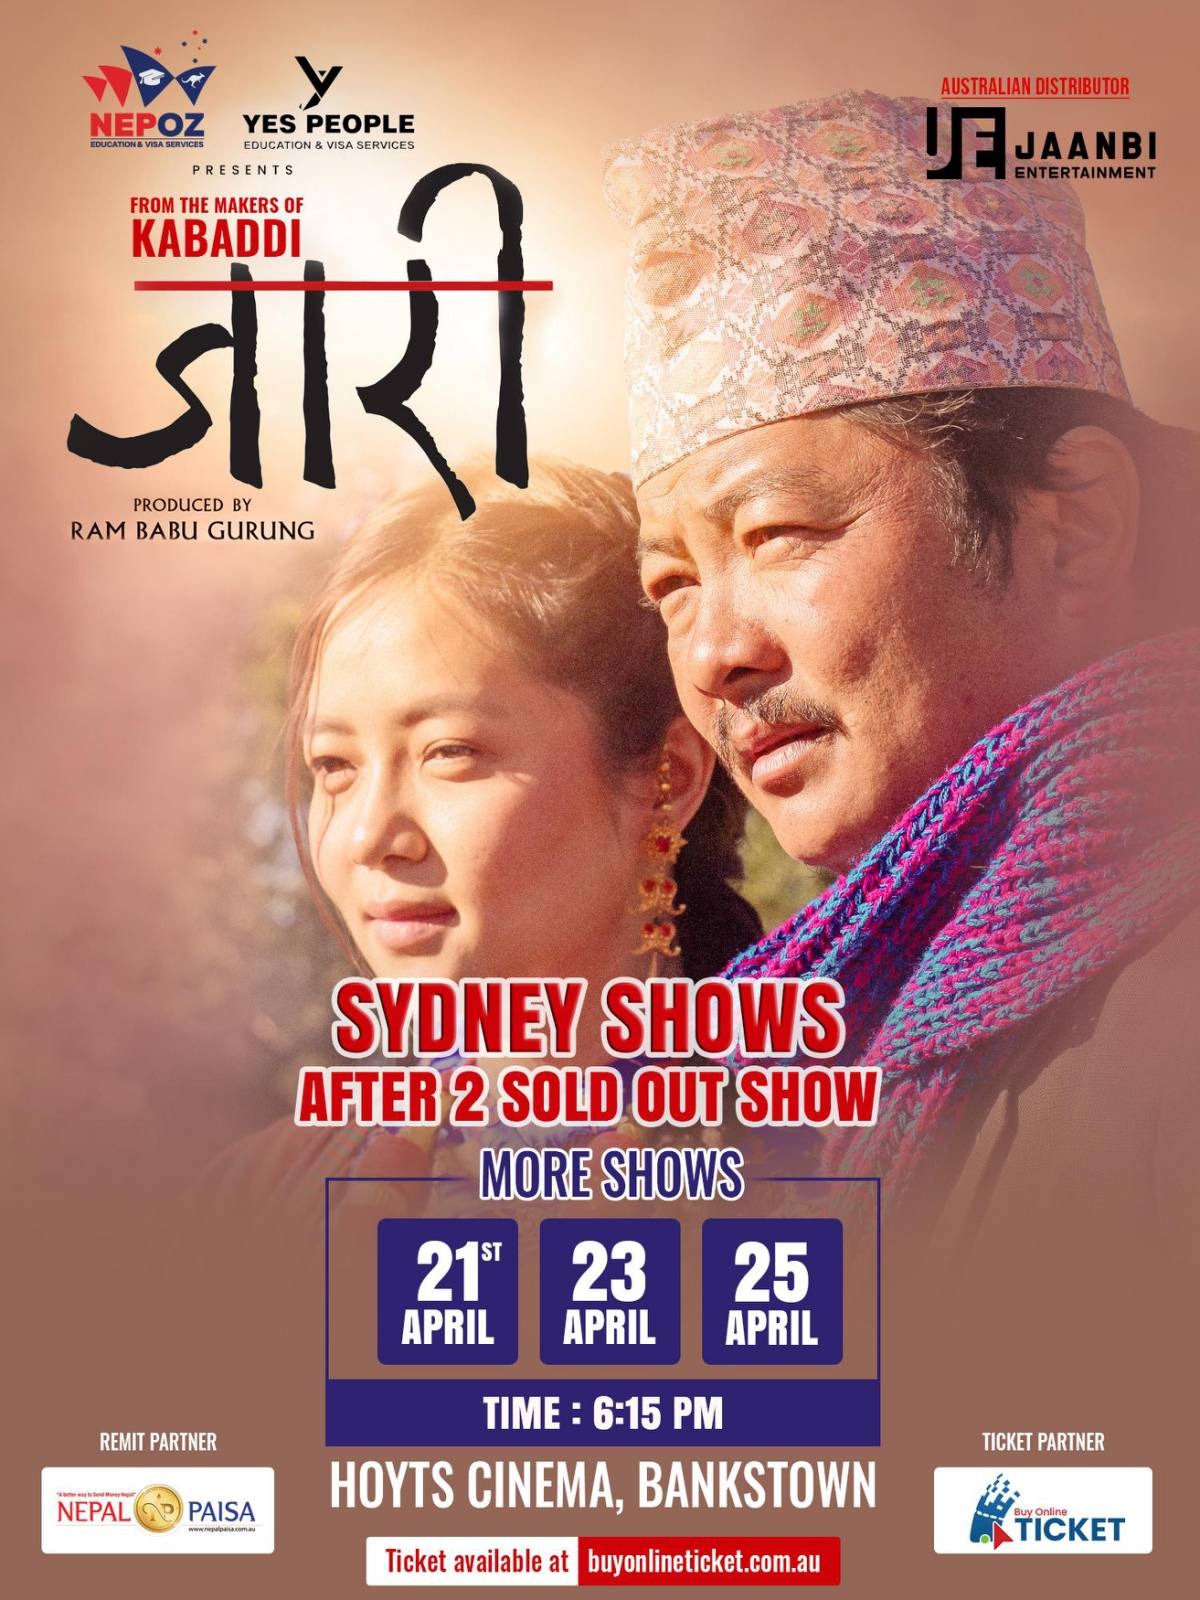 Jaari-Sydney 3rd Show